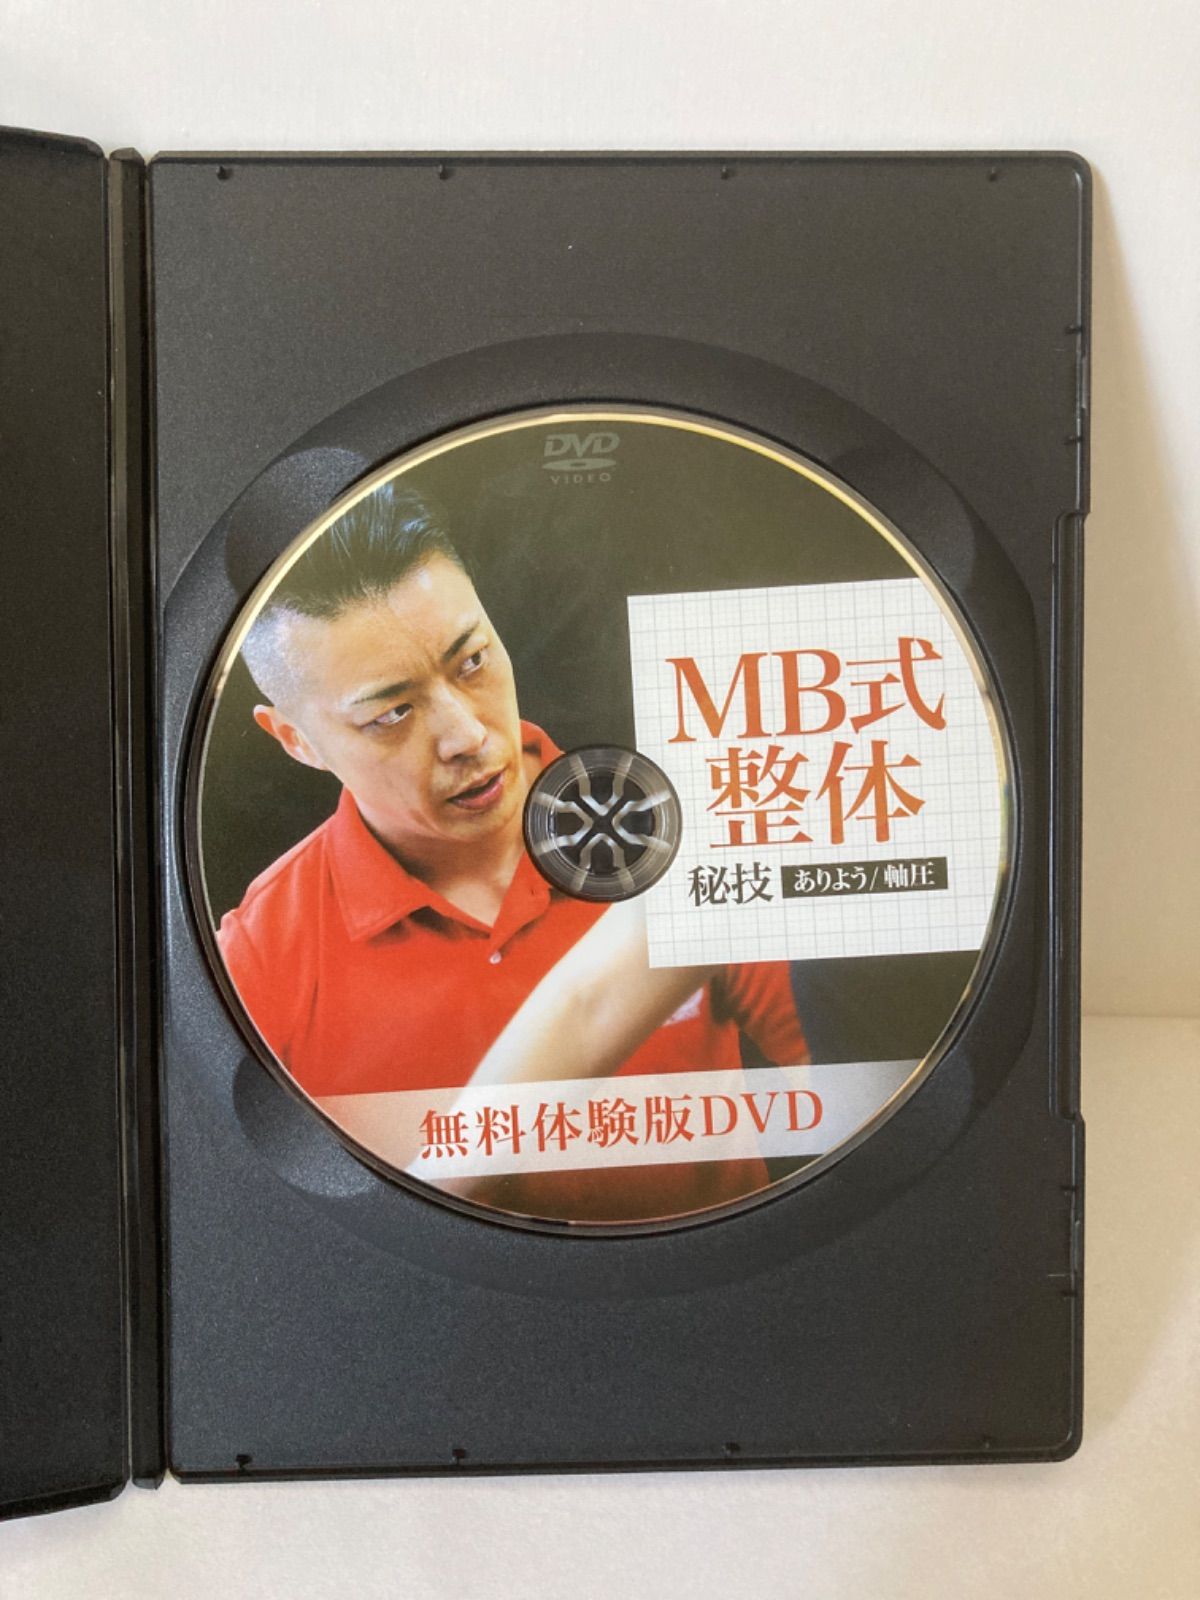 MB式整体 嚴選 「7つのアプローチ」「秘技ありよう」DVDセット - Shop